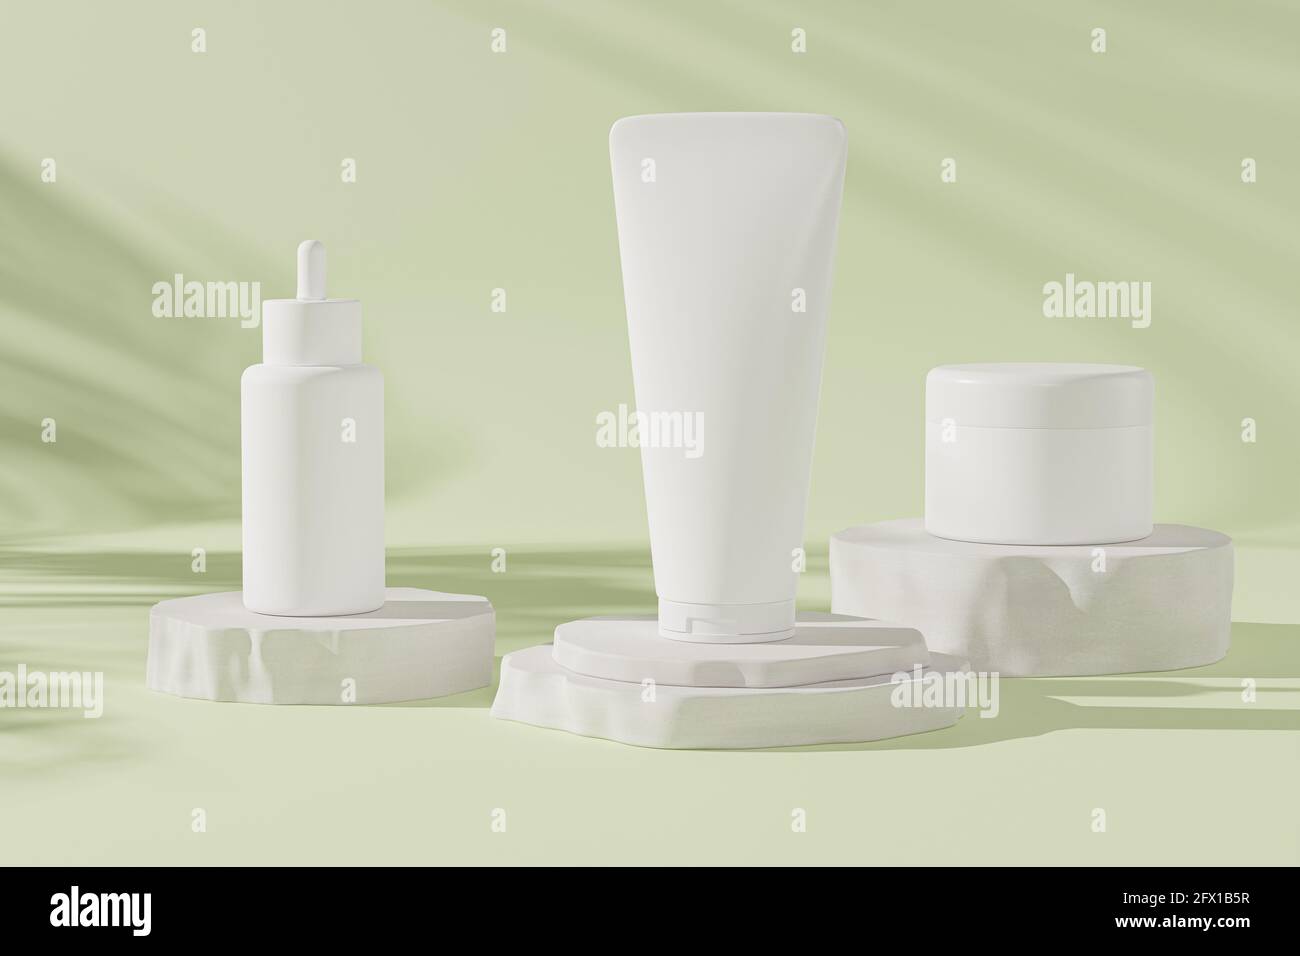 Flacon compte-gouttes, tube de lotion et pot à crème pour produits cosmétiques ou publicité sur fond vert pastel, rendu d'illustration 3d Banque D'Images